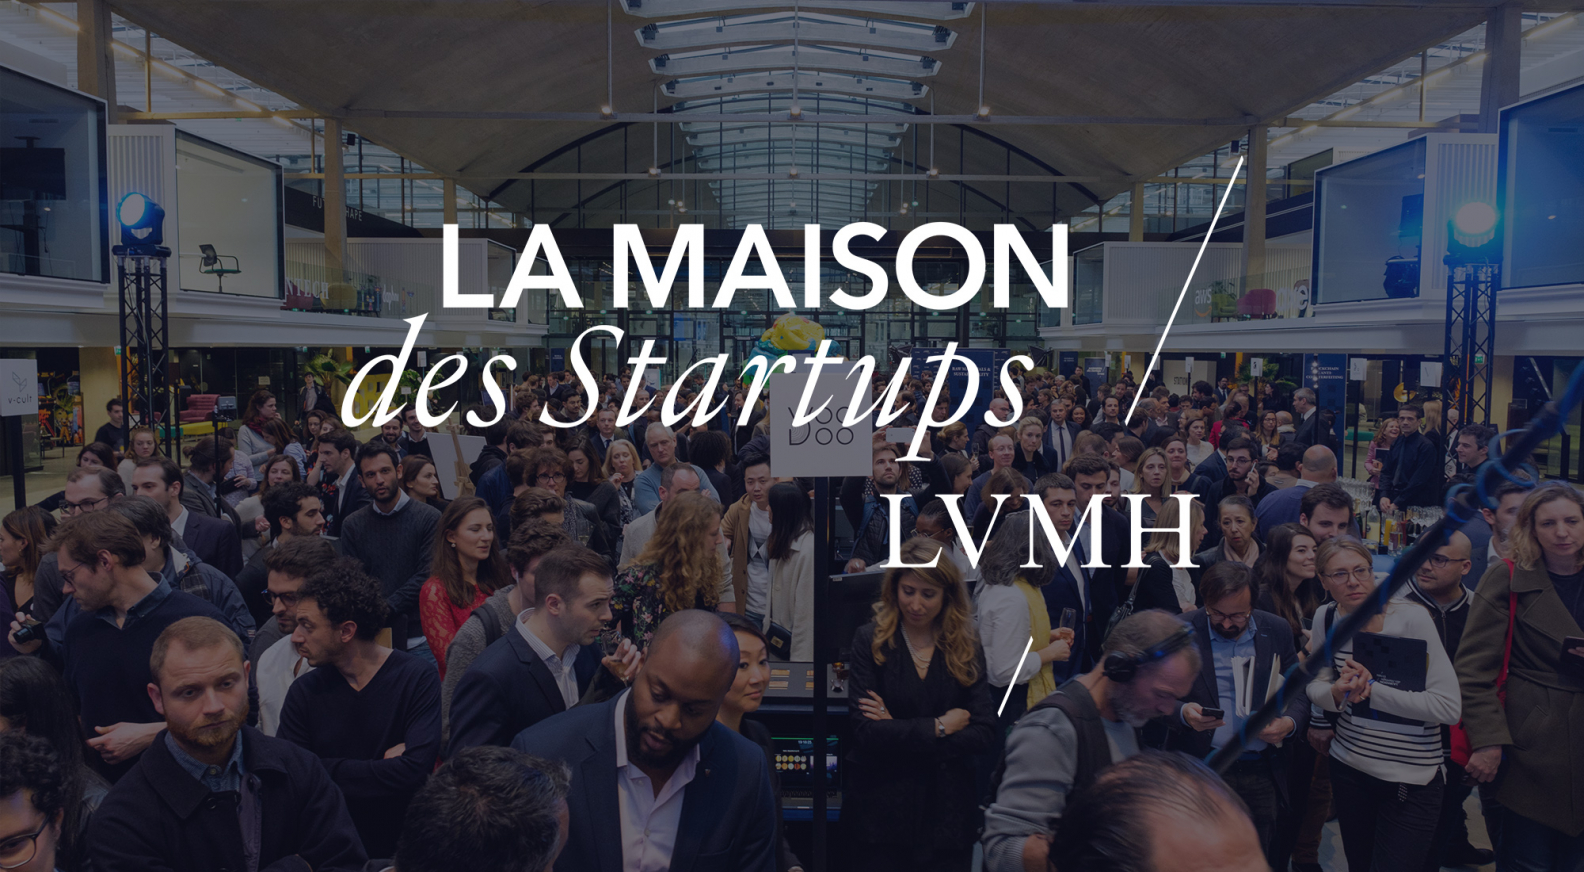 Be a shareholder - Global luxury leader, Shareholders' Club – LVMH